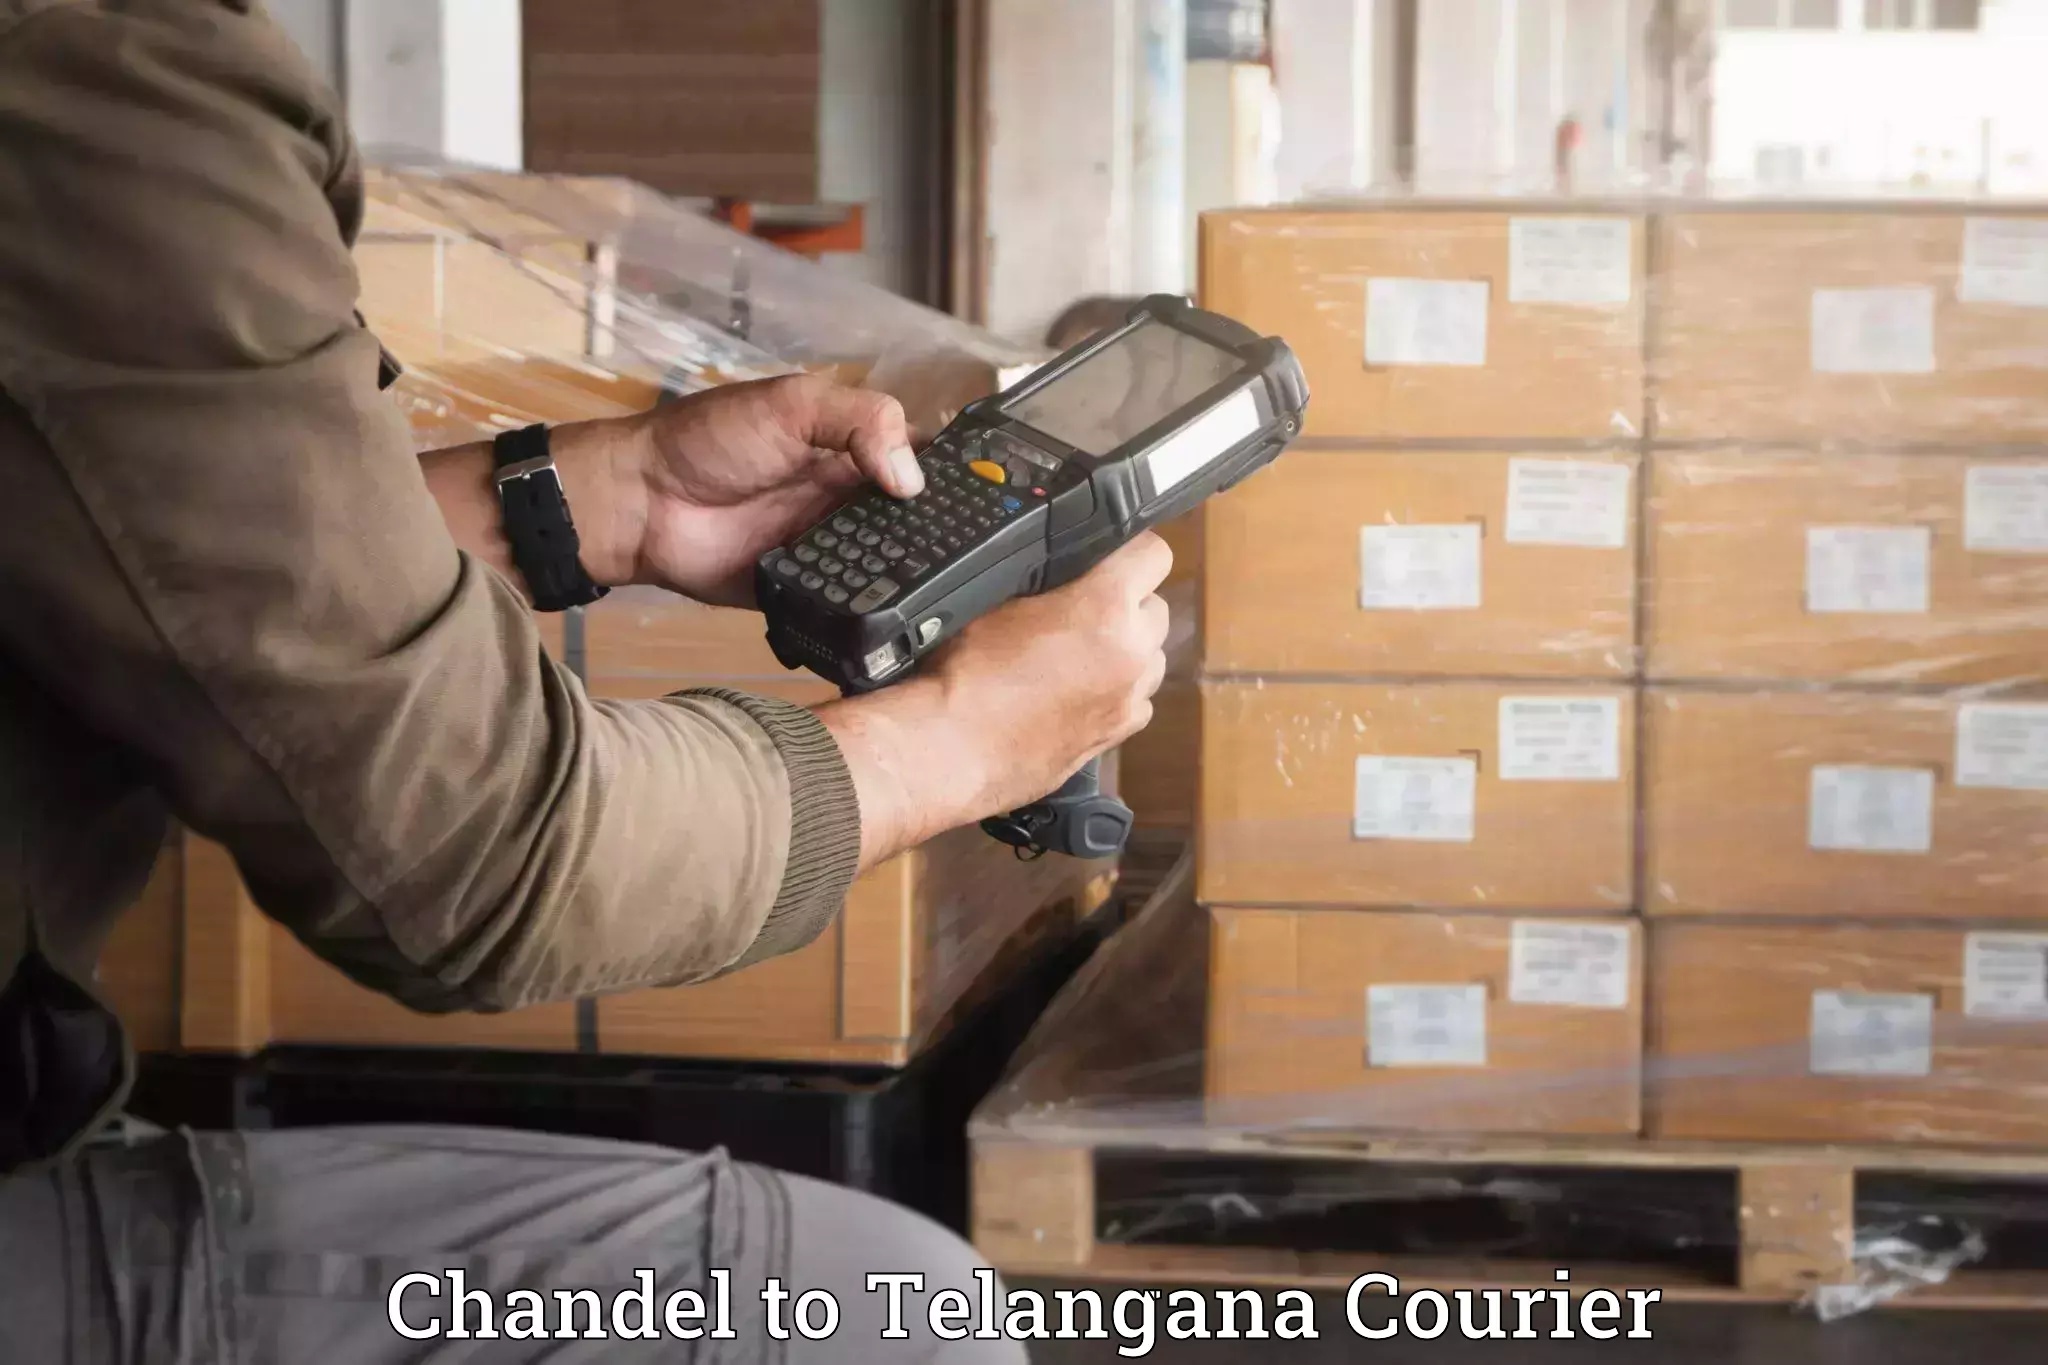 High-quality baggage shipment Chandel to Gangadhara